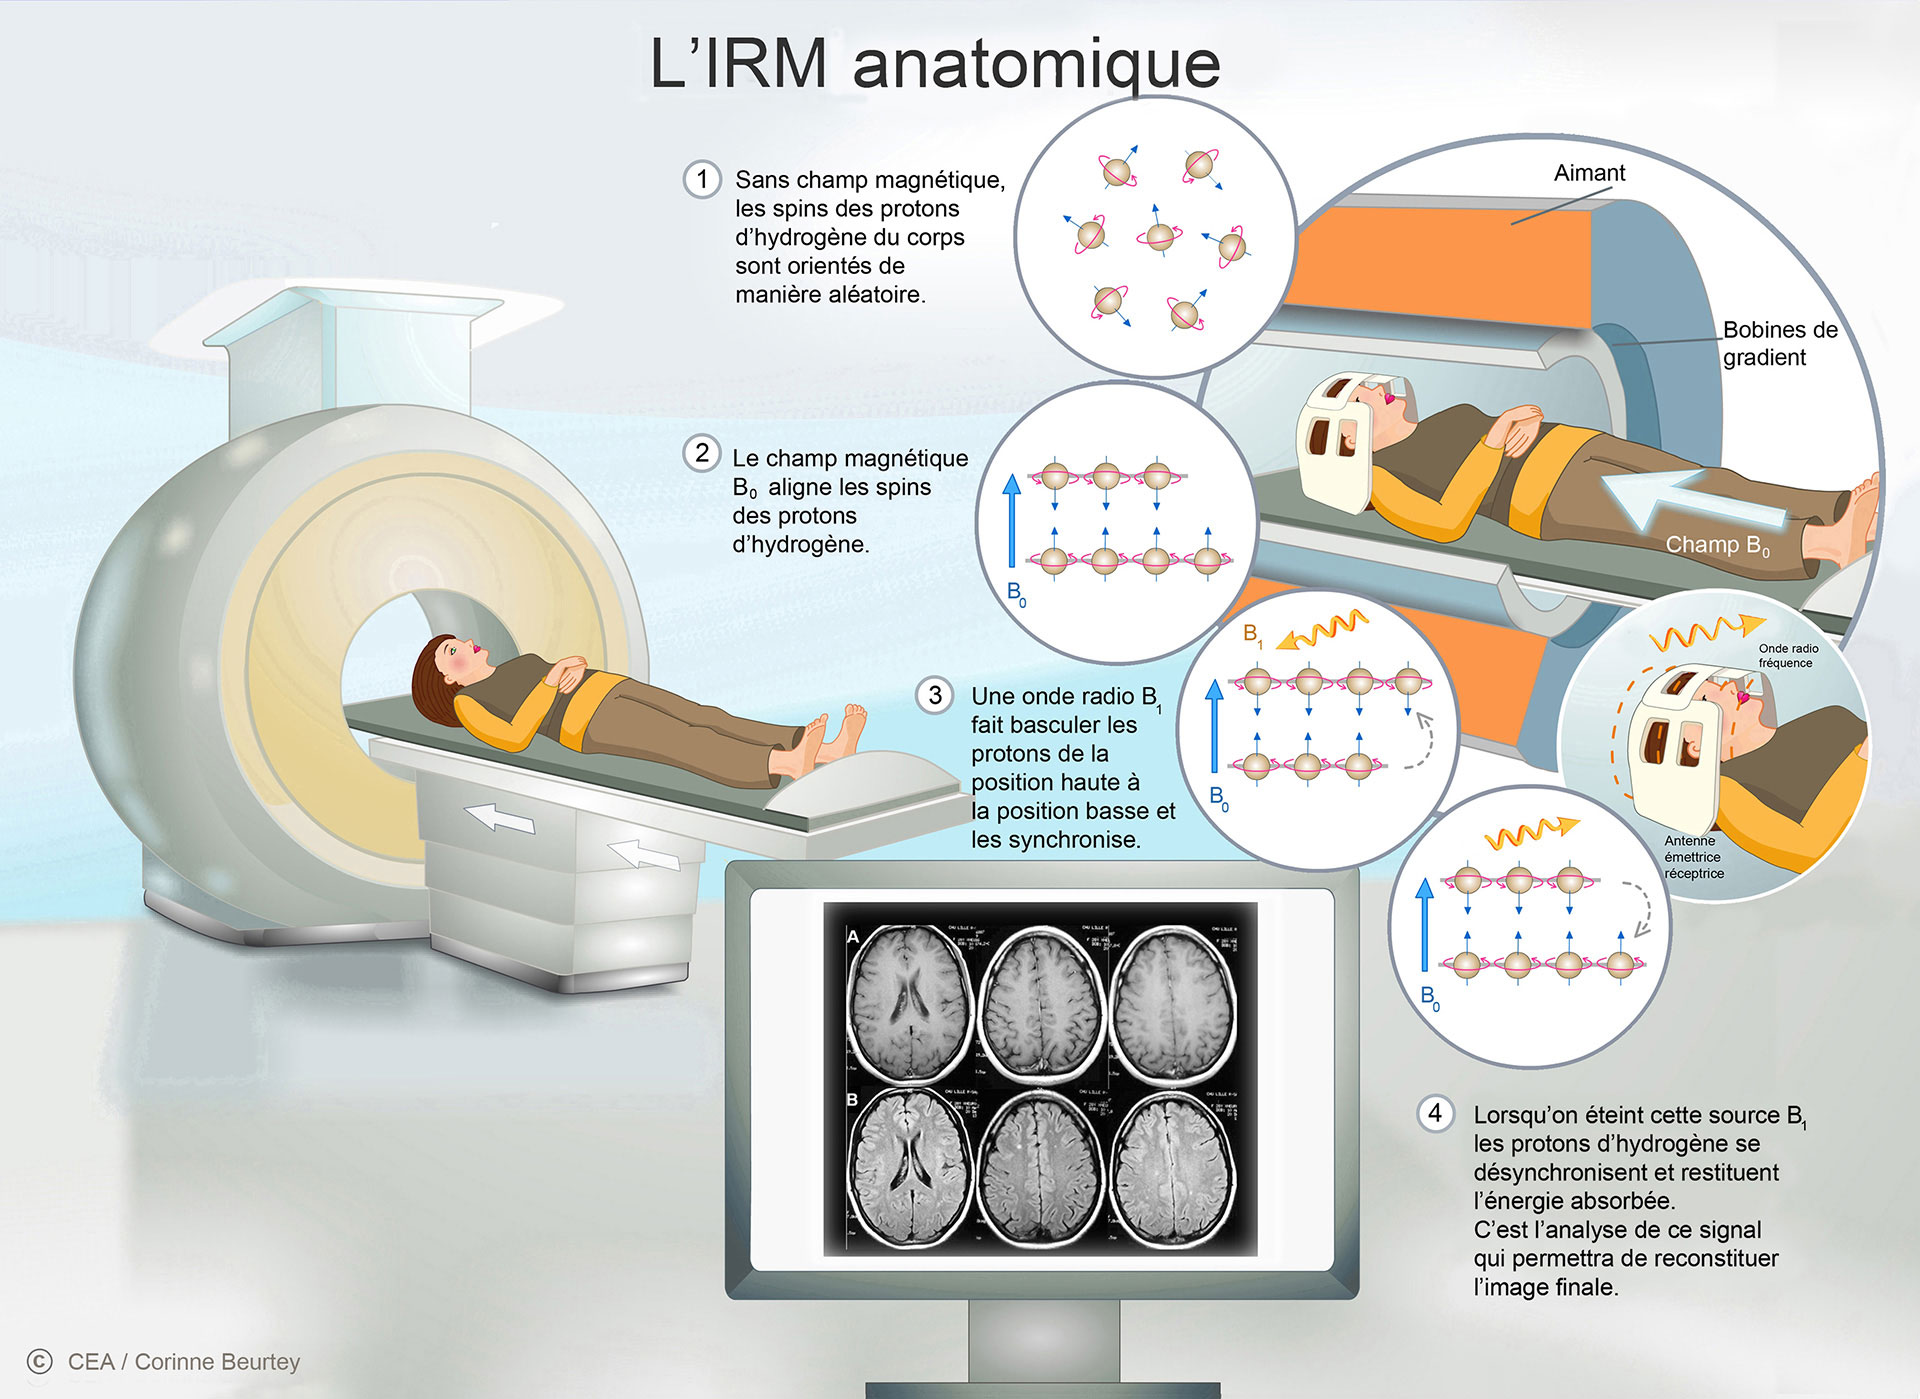 Le principe de l'IRM anatomique